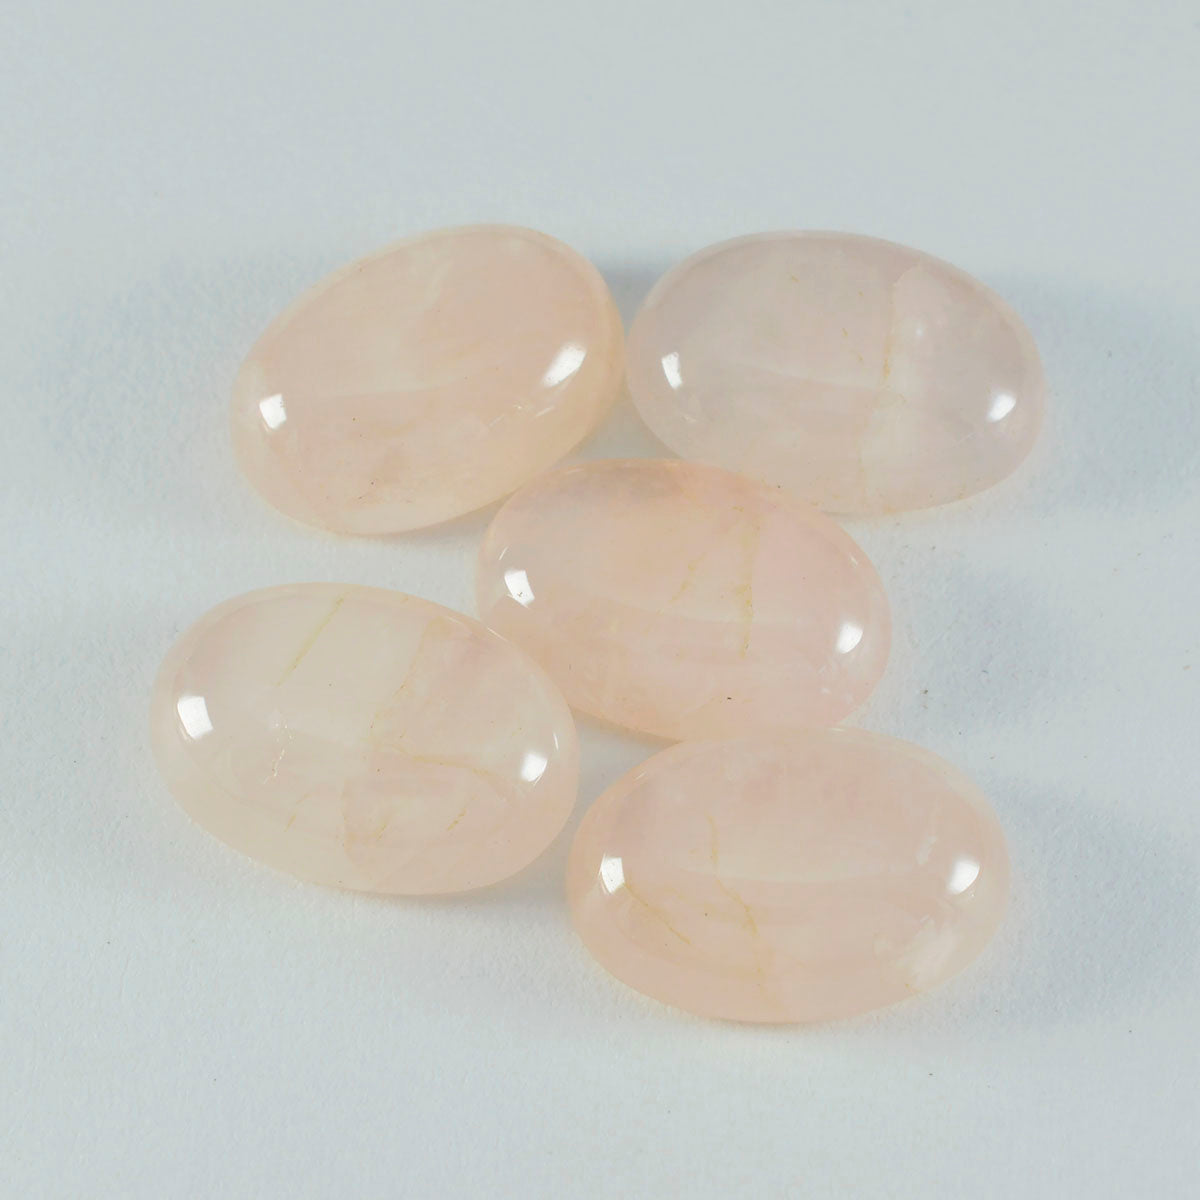 riyogems 1 шт. кабошон из розового кварца 12x16 мм овальной формы, сладкий качественный камень